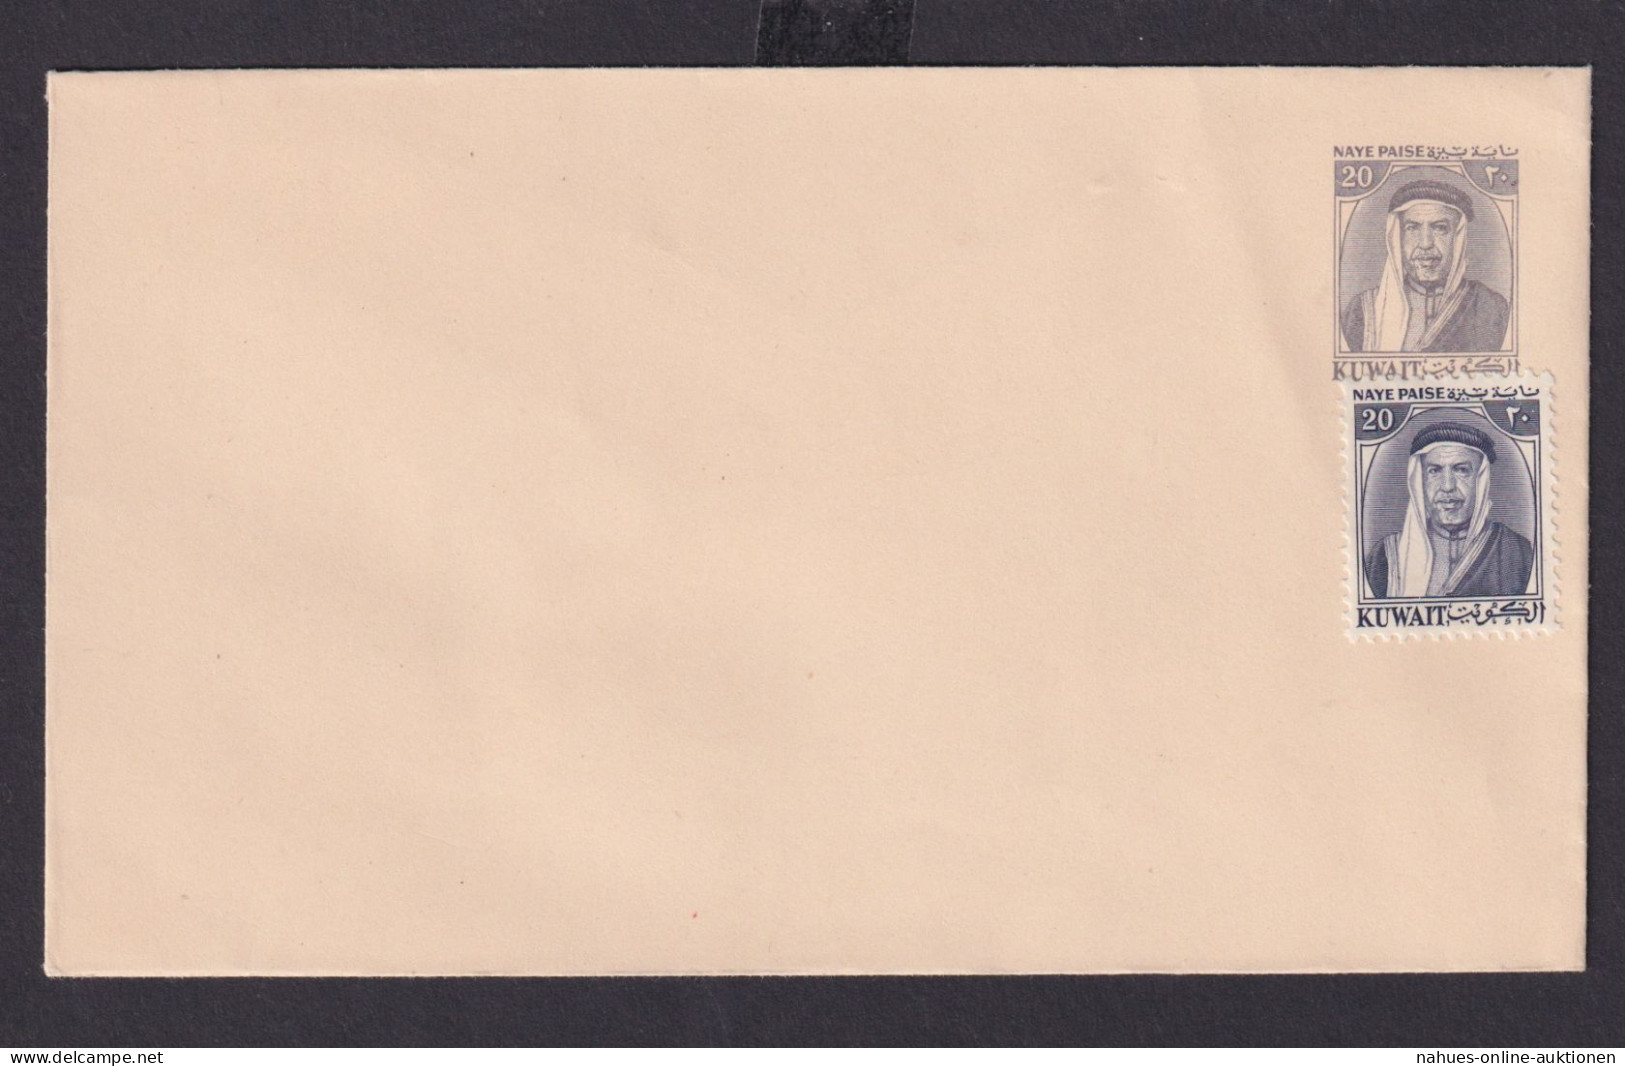 Kuwait Ganzsache Umschlag 20 C Grau 151 X 89 Mm - Kuwait